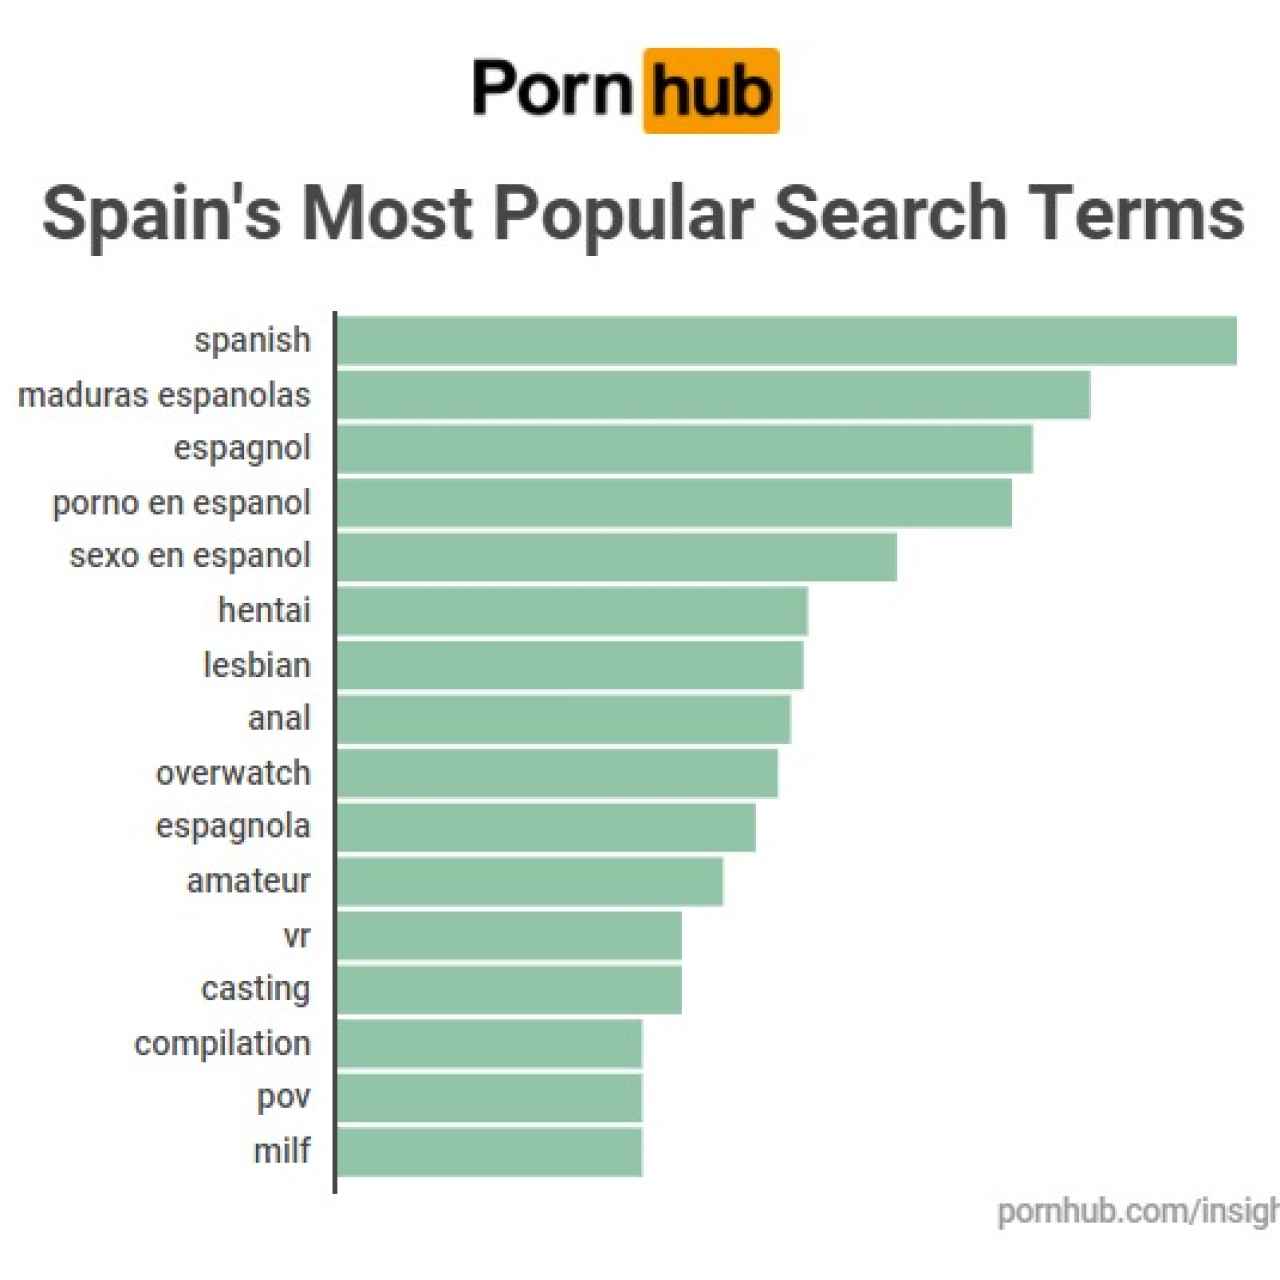 Las palabras más buscadas en Pornhub por los españoles